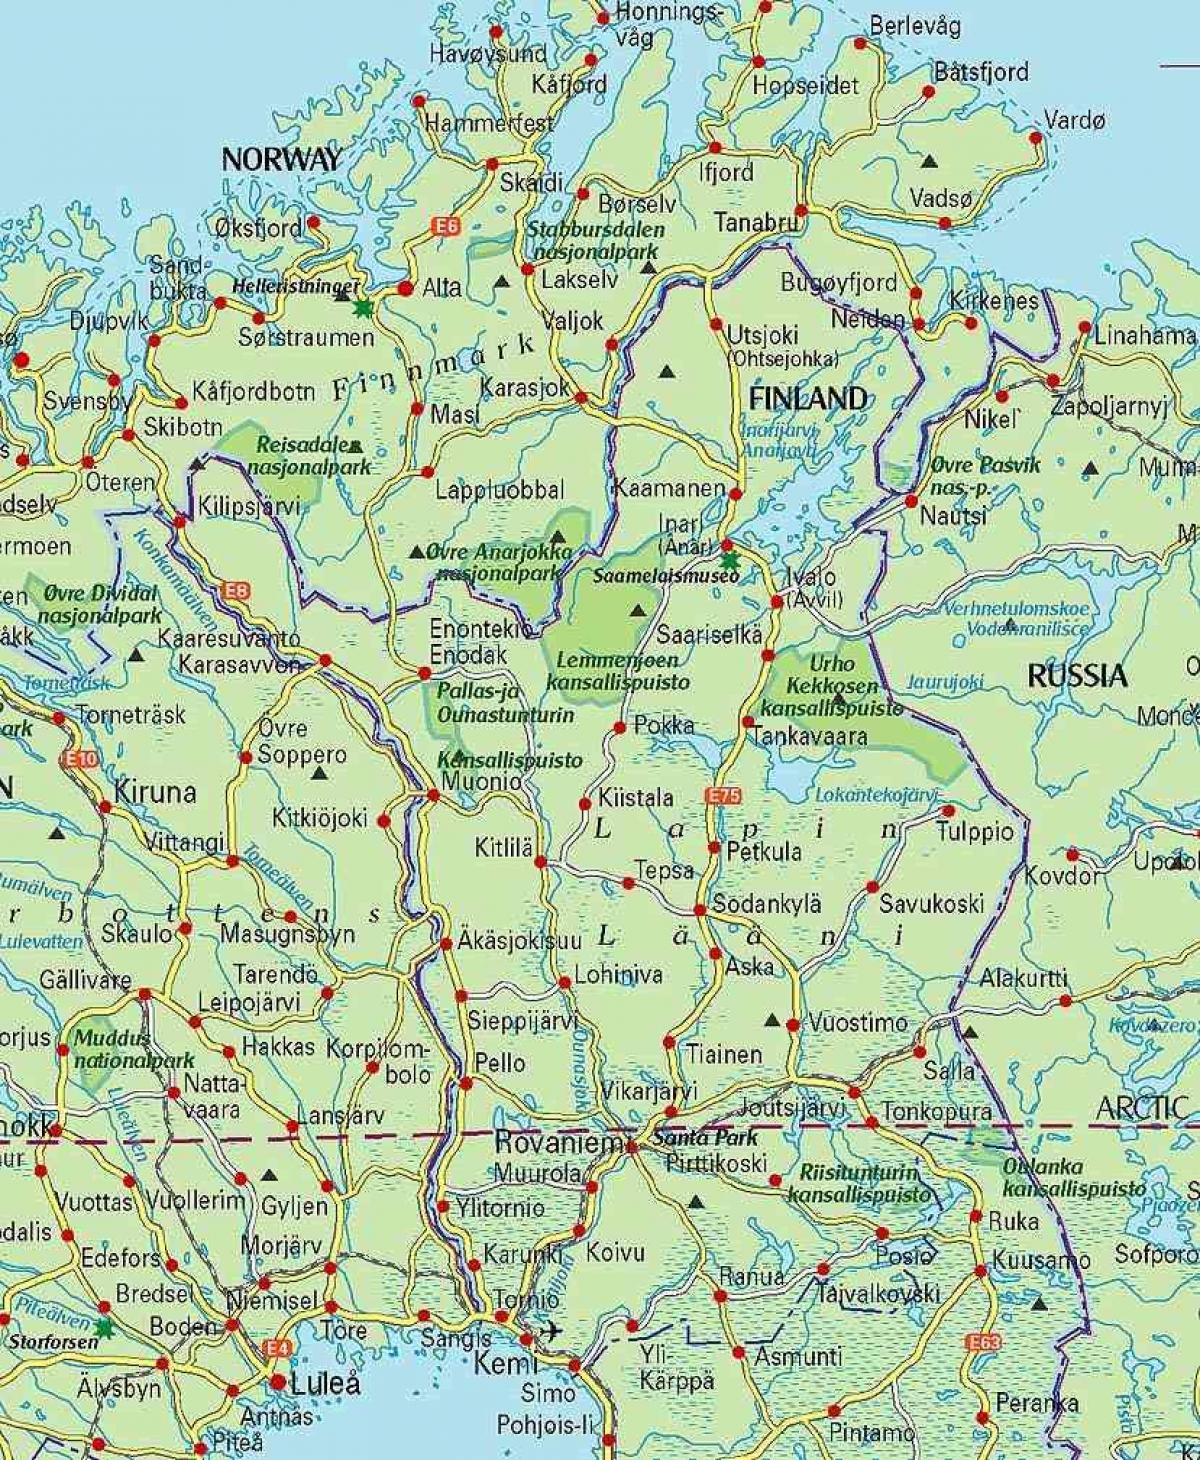 mapi Finske i laponiji